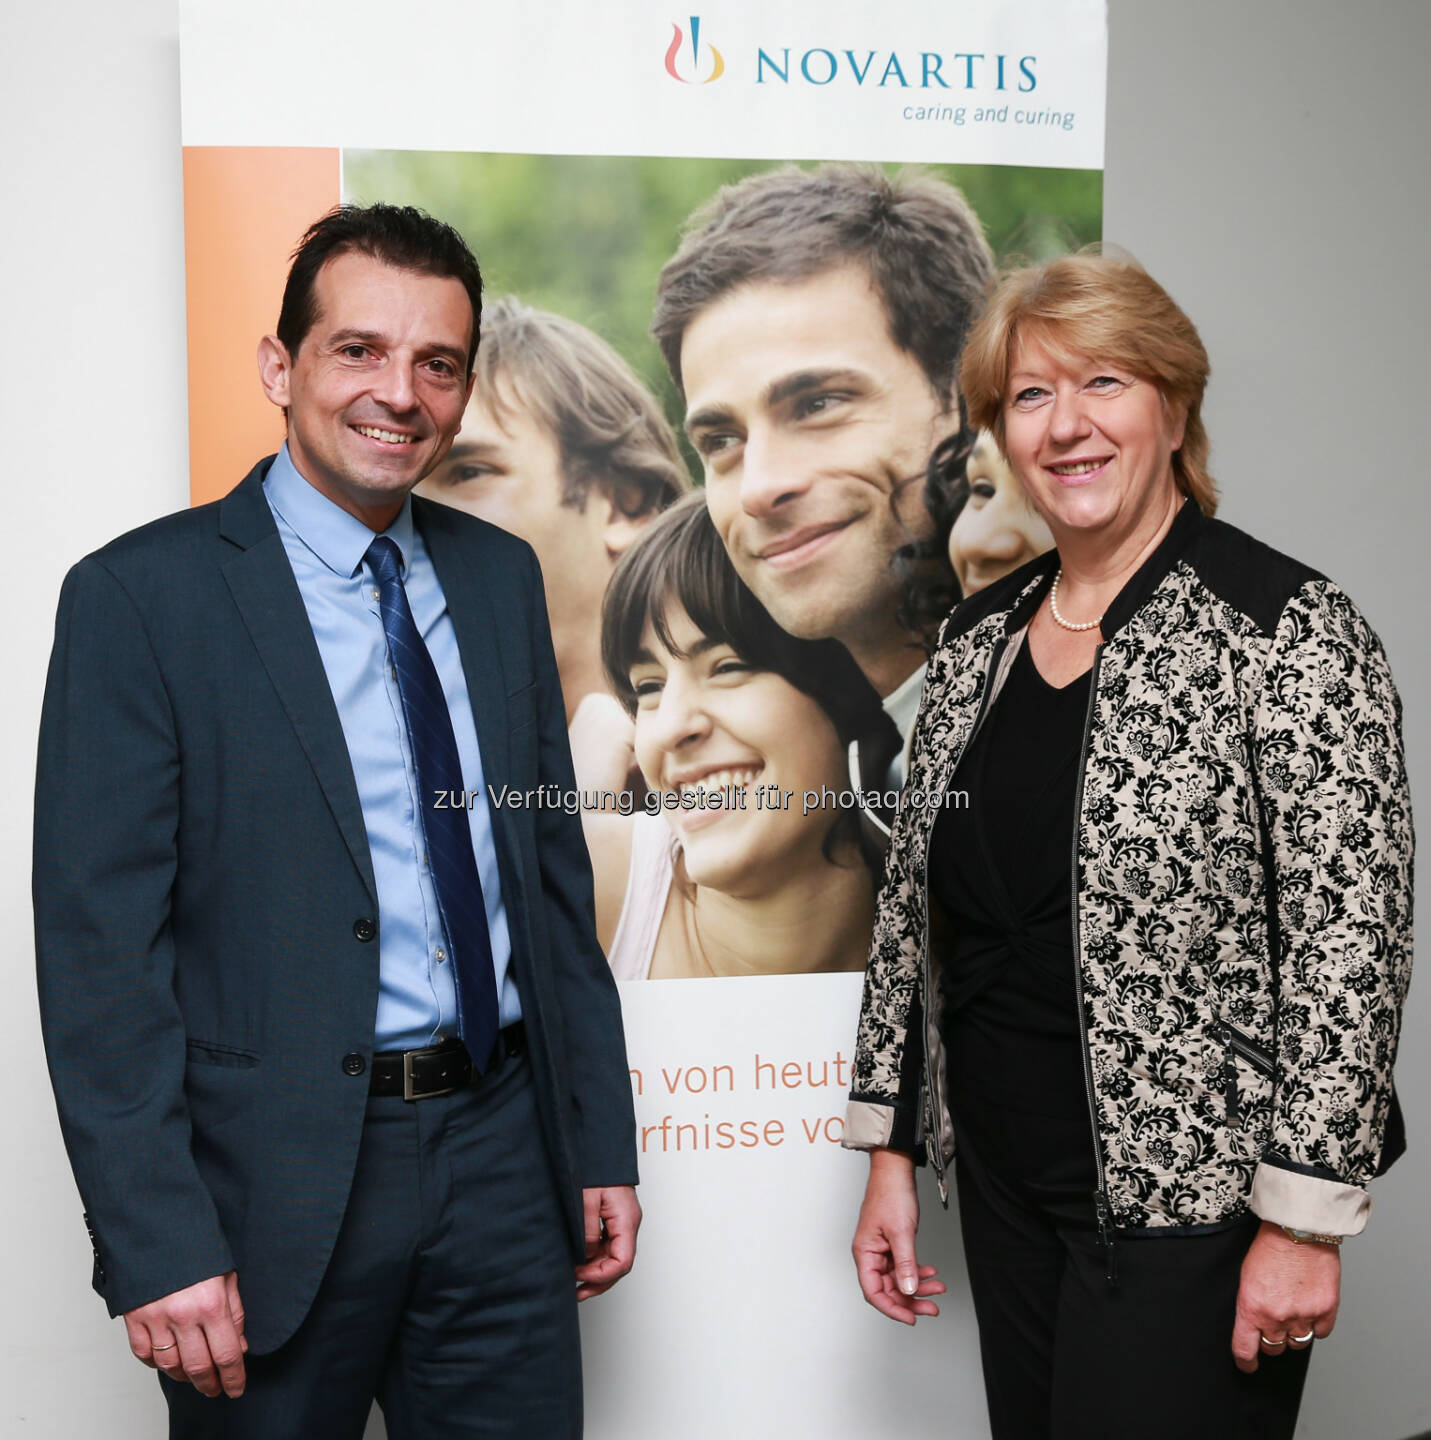 Christa Wirthumer-Hoche besuchte Novartis Austria am Standort Wien und wurde von Country President George Zarkalis willkommen geheißen - Regelmäßiger Austausch wichtig, um Patienten innovative Therapien bringen zu können (Bild: Jürg Christandl/Novartis)